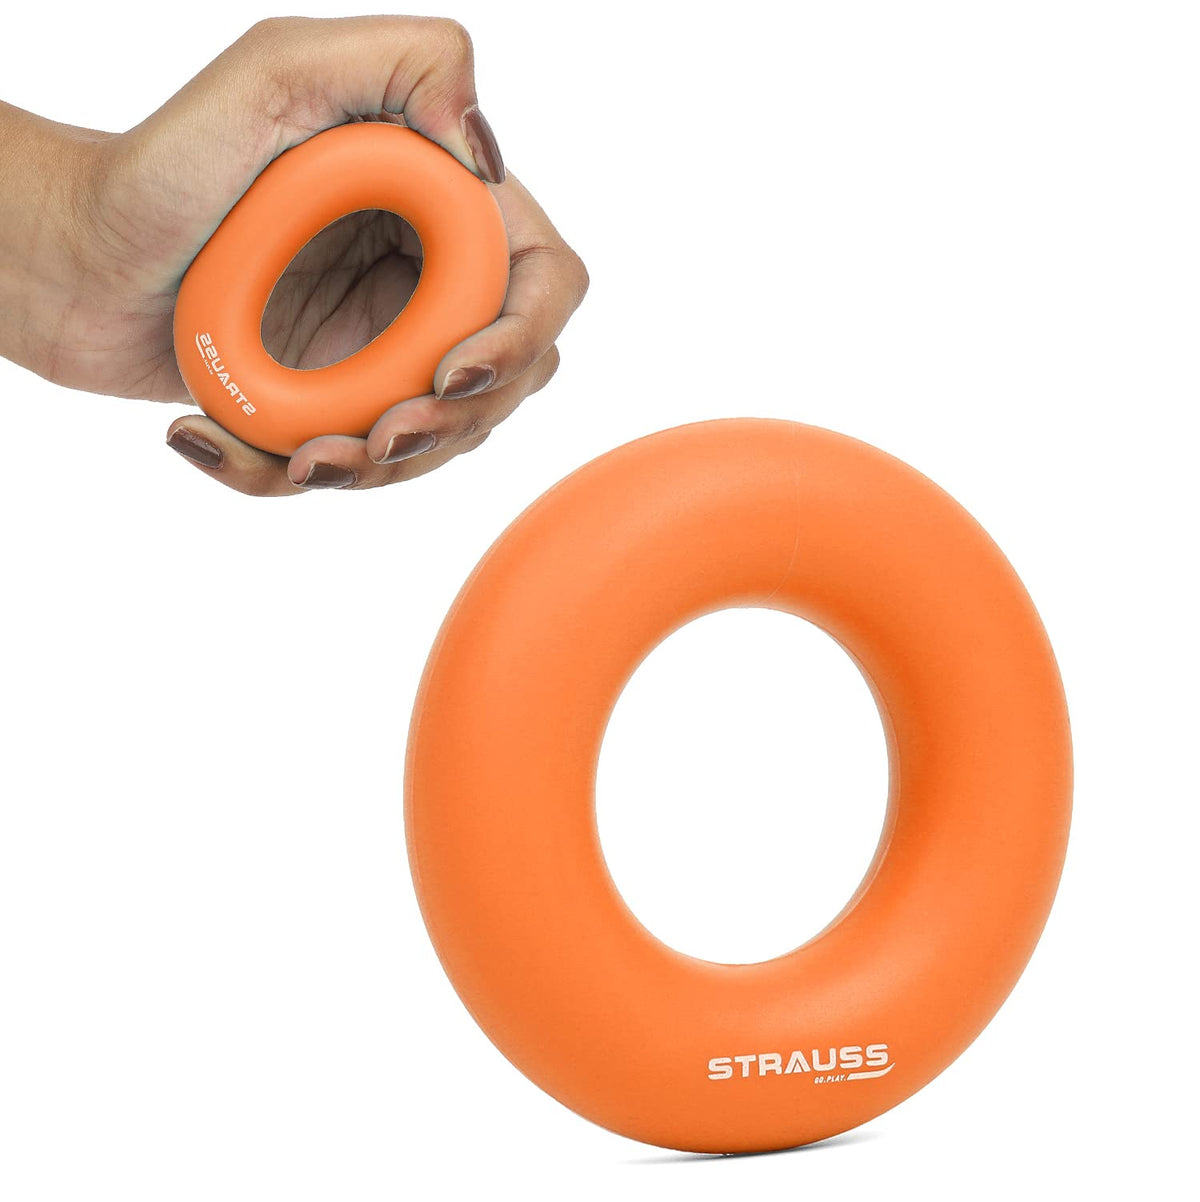 Strauss Silicon Palm Hand Grip Exerciser, (Orange)